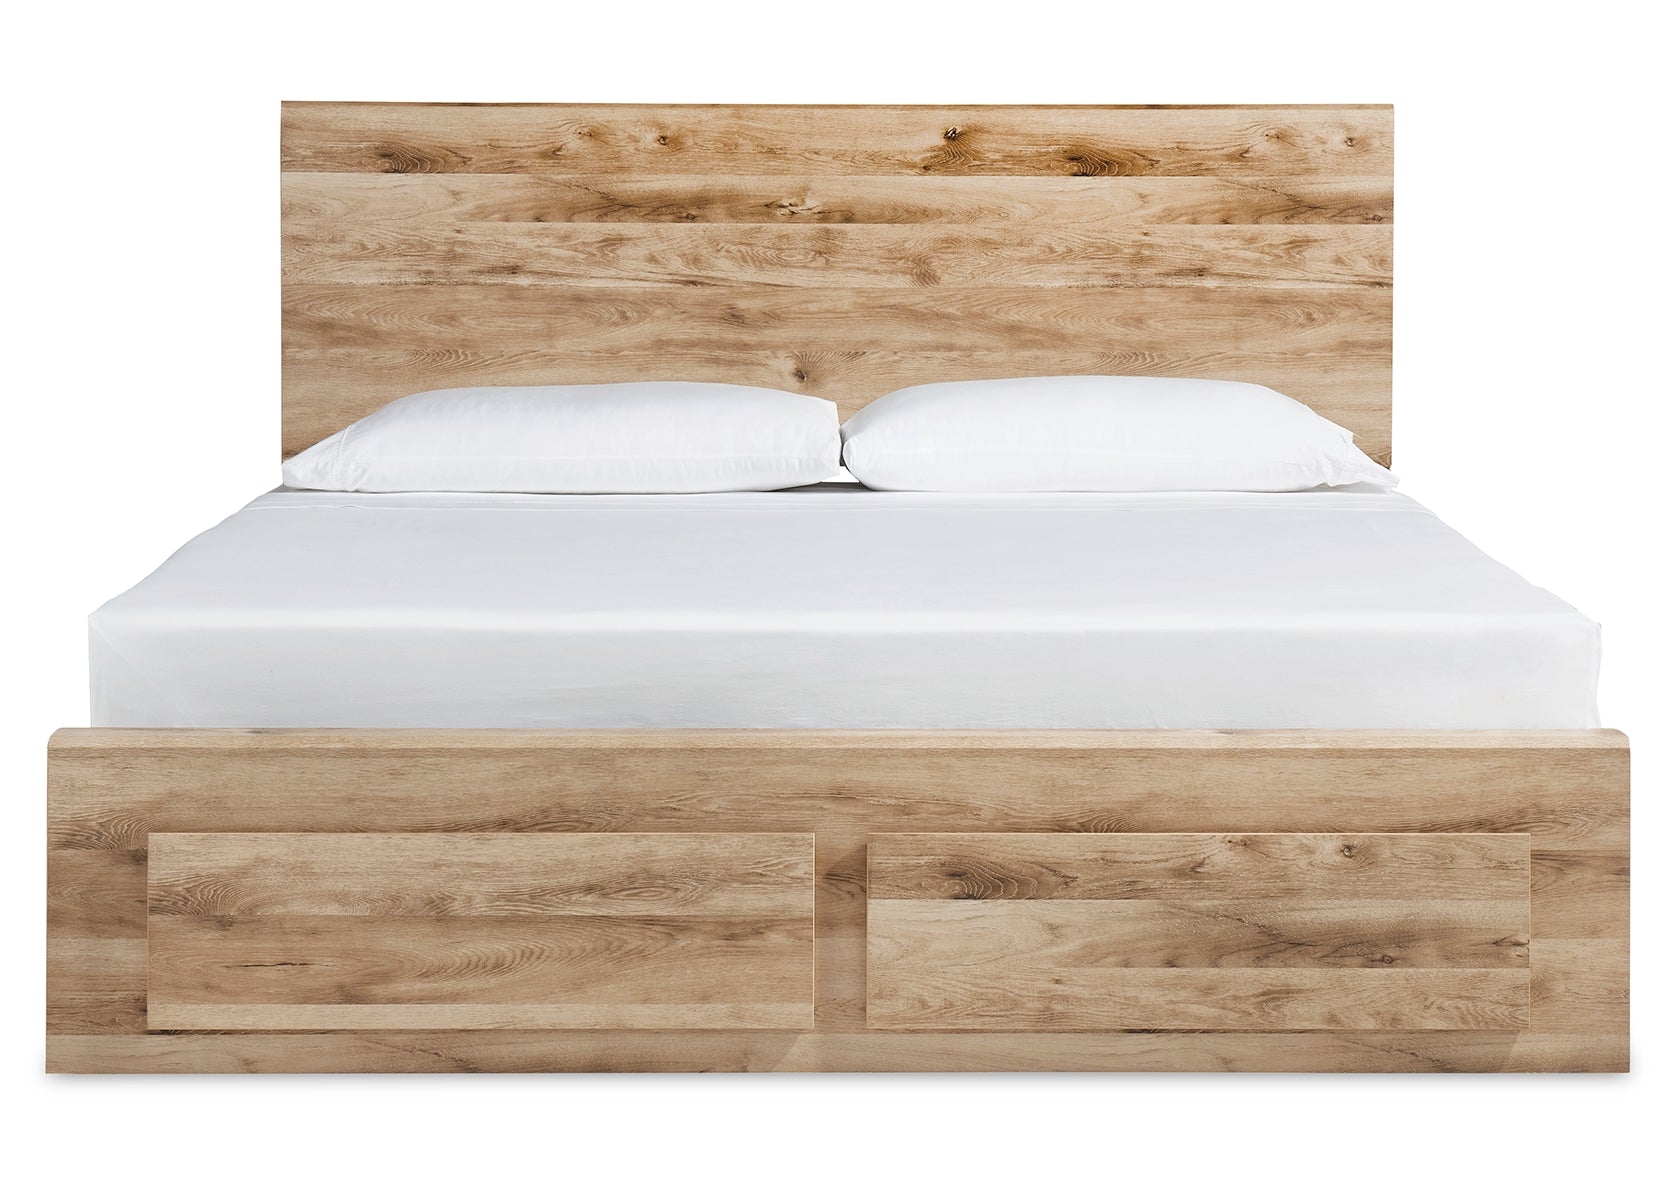 Hyanna King Panel Storage Bed with 2 Under Bed Storage Drawer